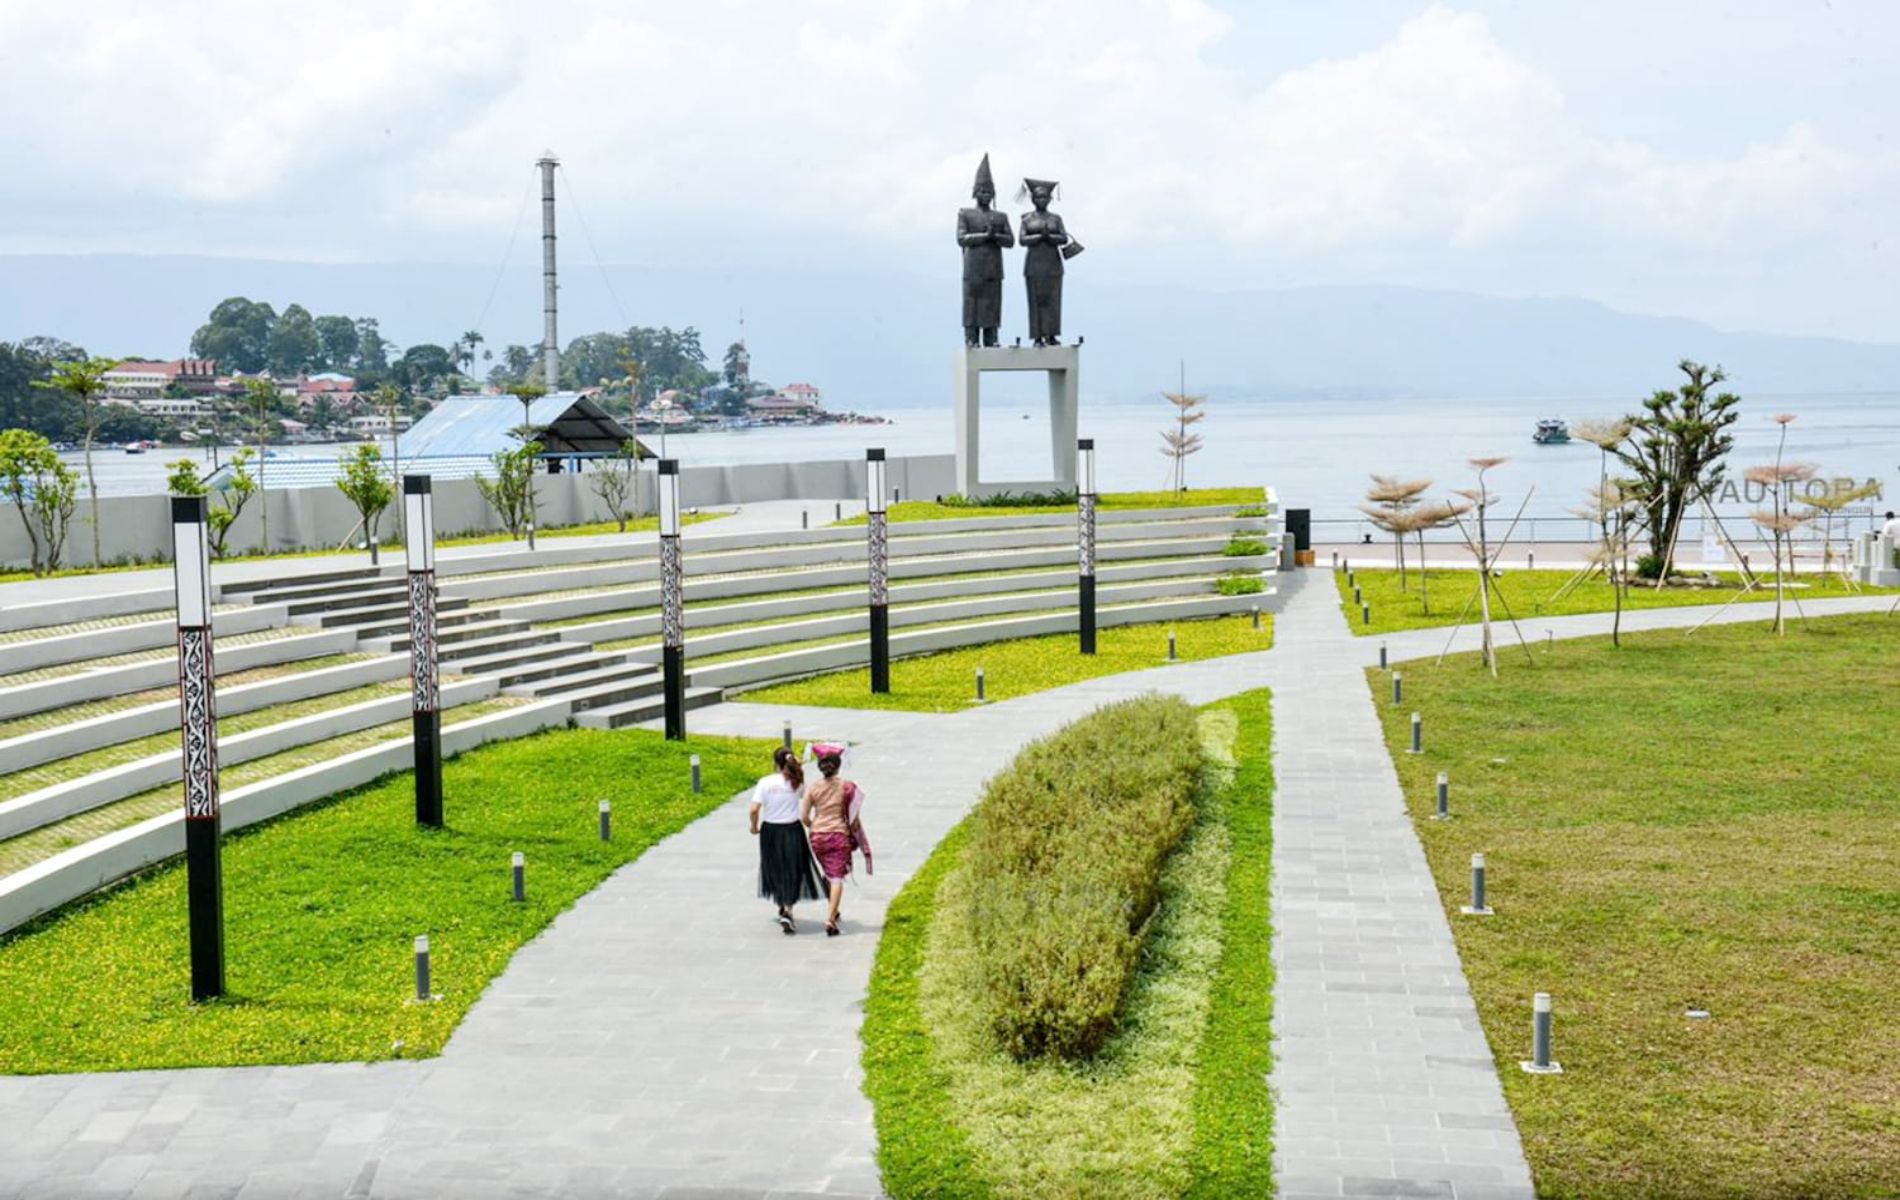 Pantai Bebas Parapat merupakan salah satu tempat wisata populer di kawasan Danau Toba. Adapun tempat wisata ini berlokasi di Kabupaten Simalungun, Parapat, Sumatera Utara./Dok. Kemenparekraf.